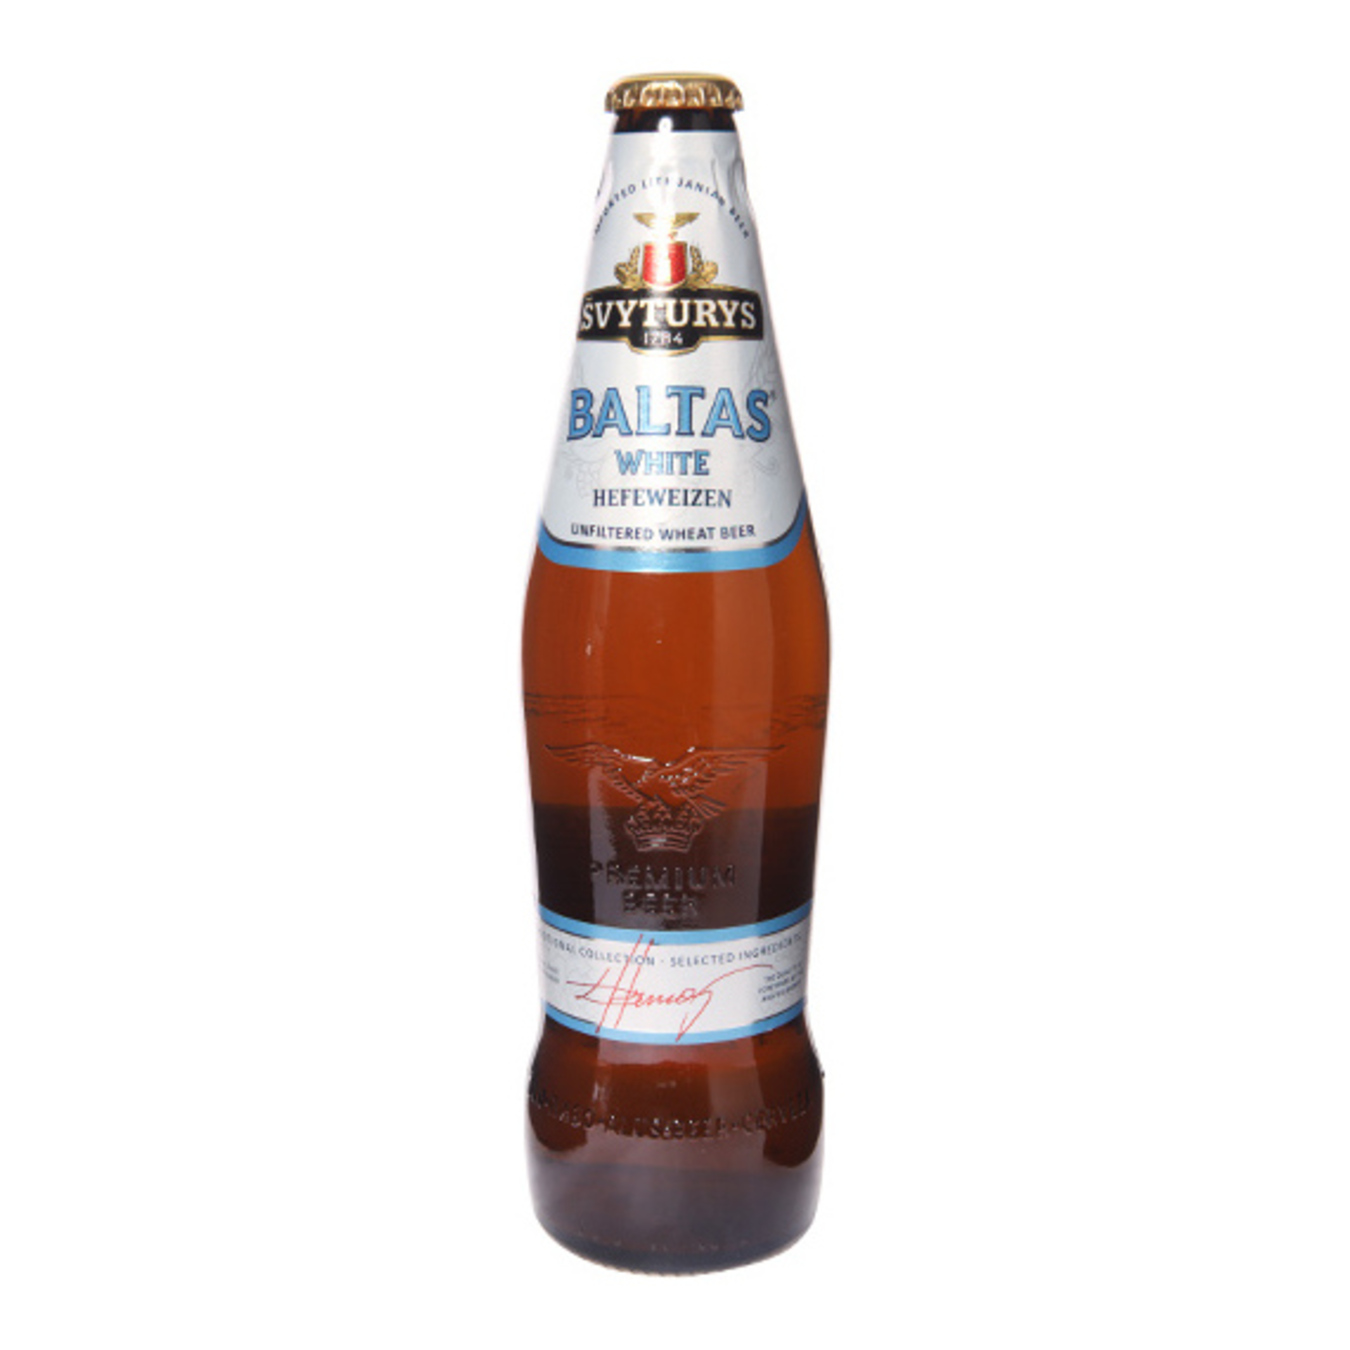 Пиво Svyturus Baltas White Hefeweizen светлое 5% 0,5л